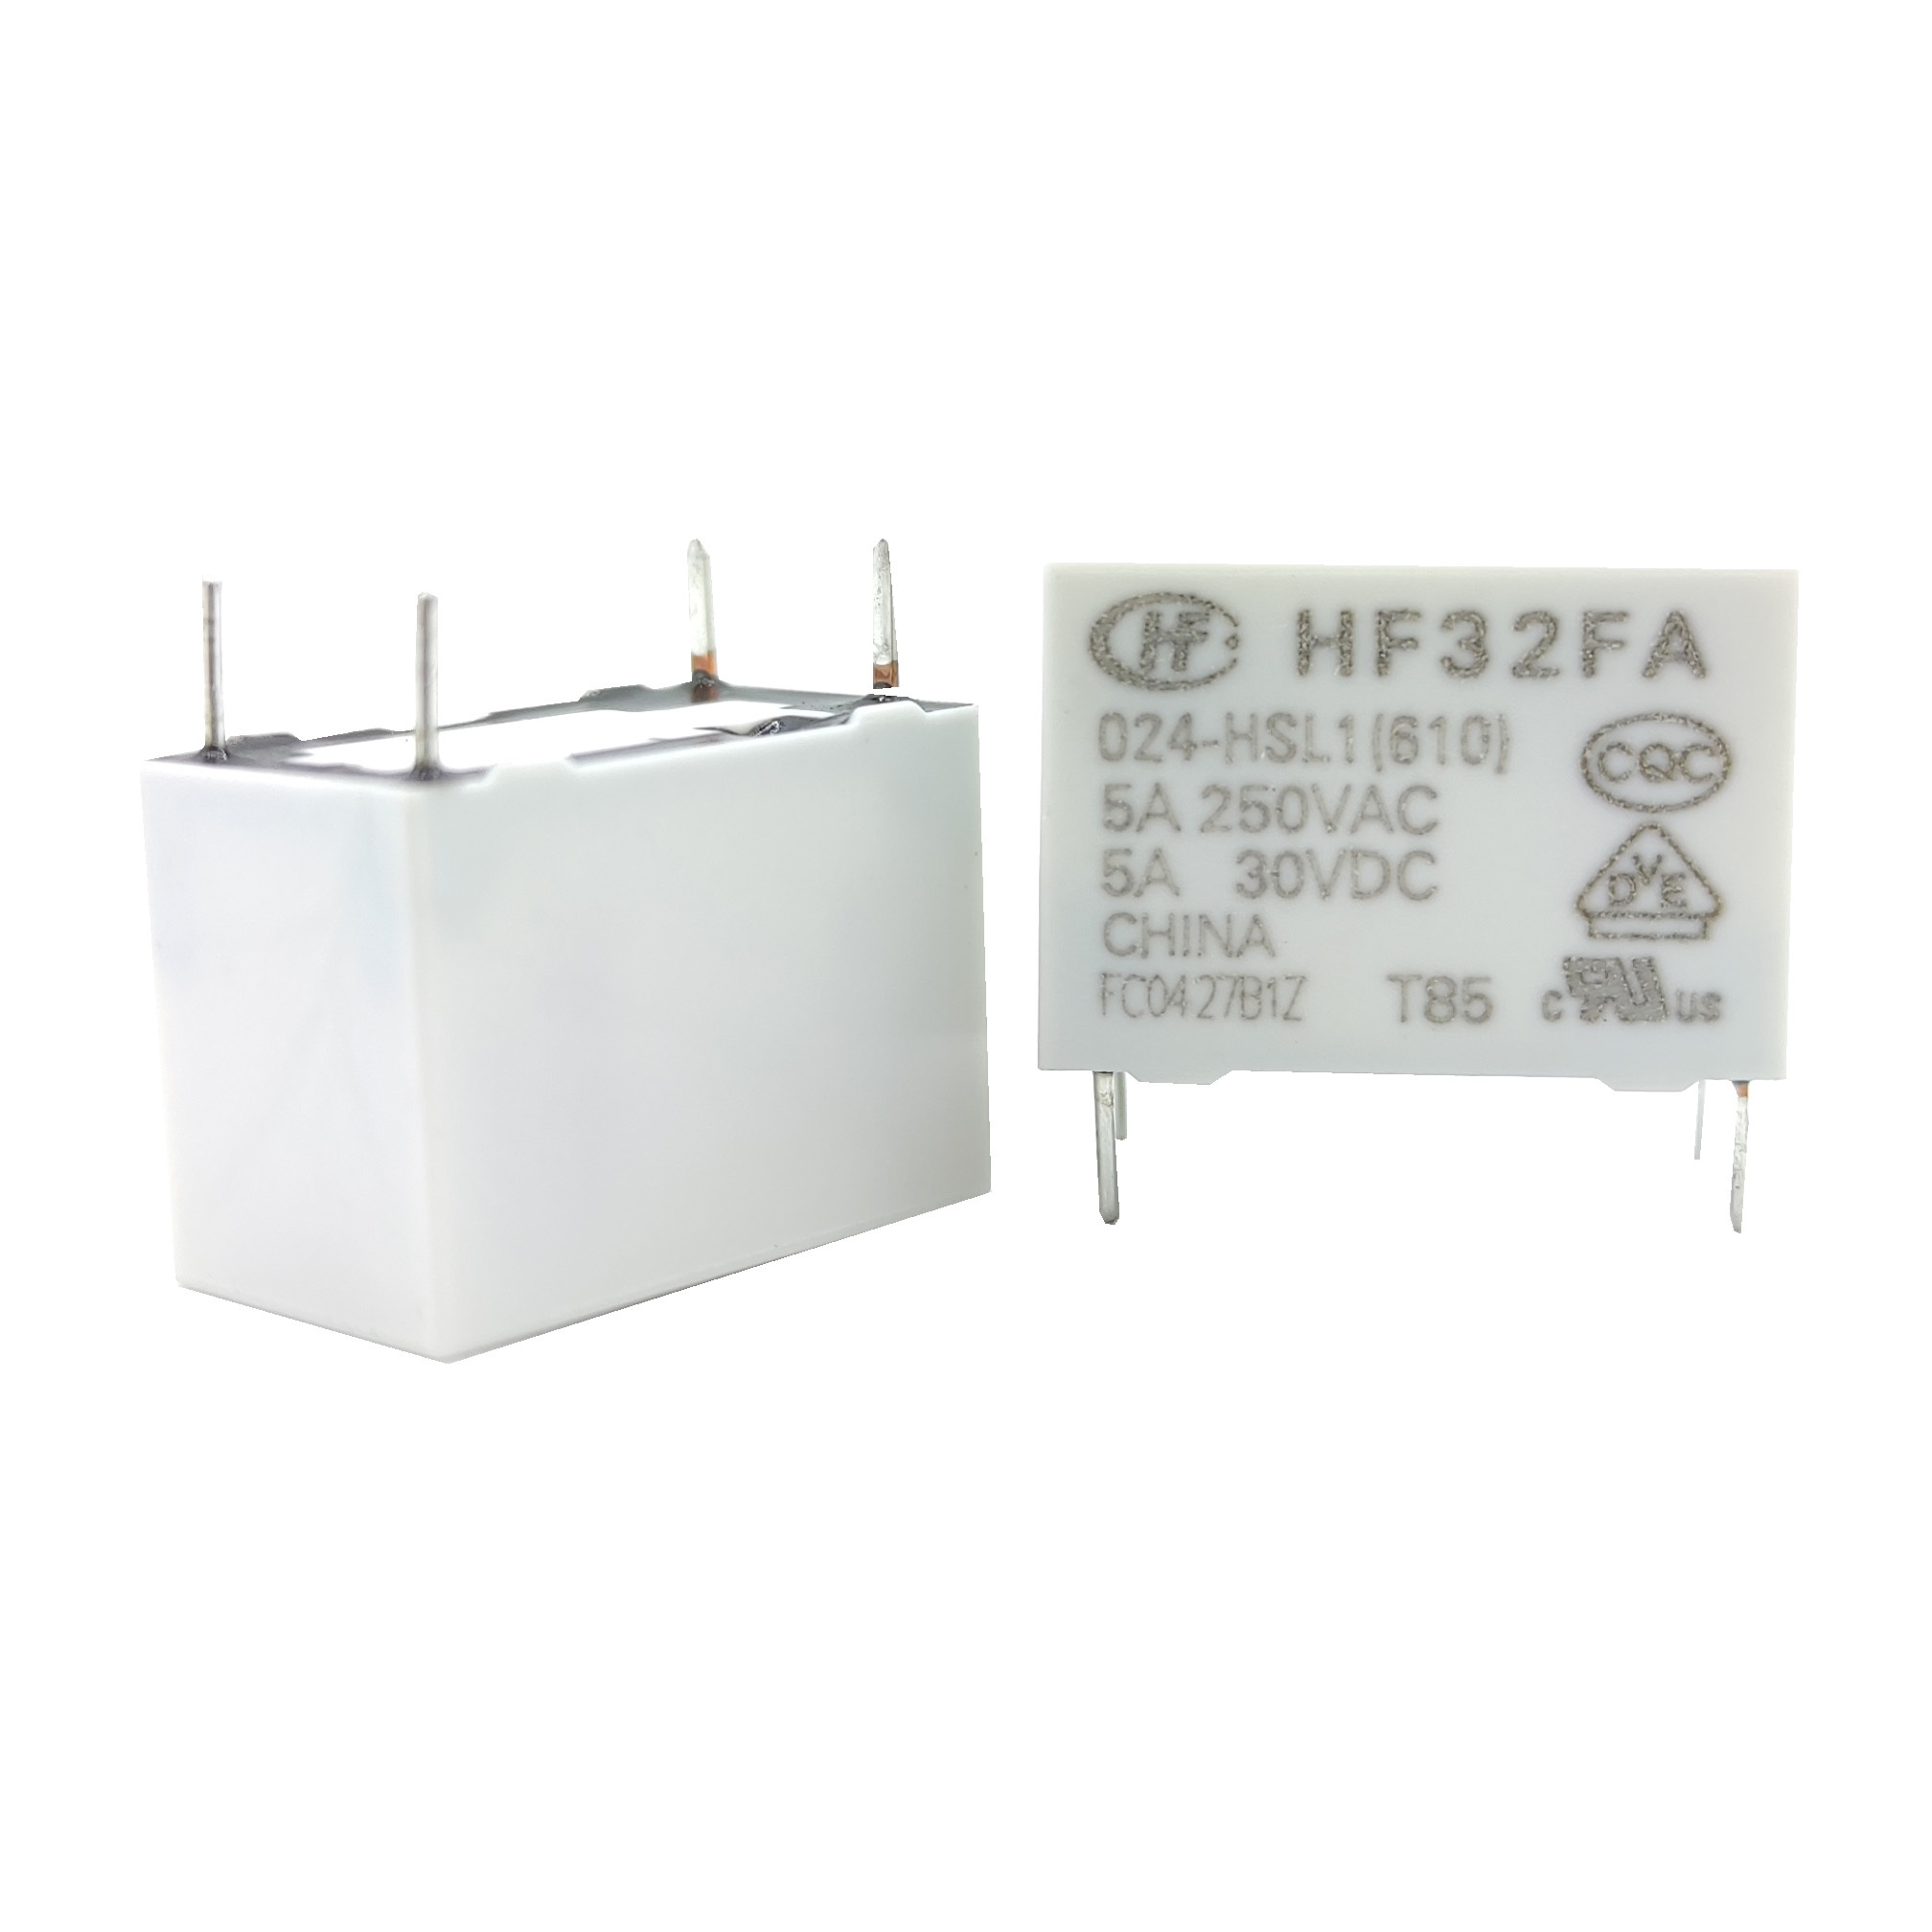 رله کبریتی 24 ولت 5 آمپر 4 پایه برند HONGFA |مدل  HF32FA/024-HSL1(610)